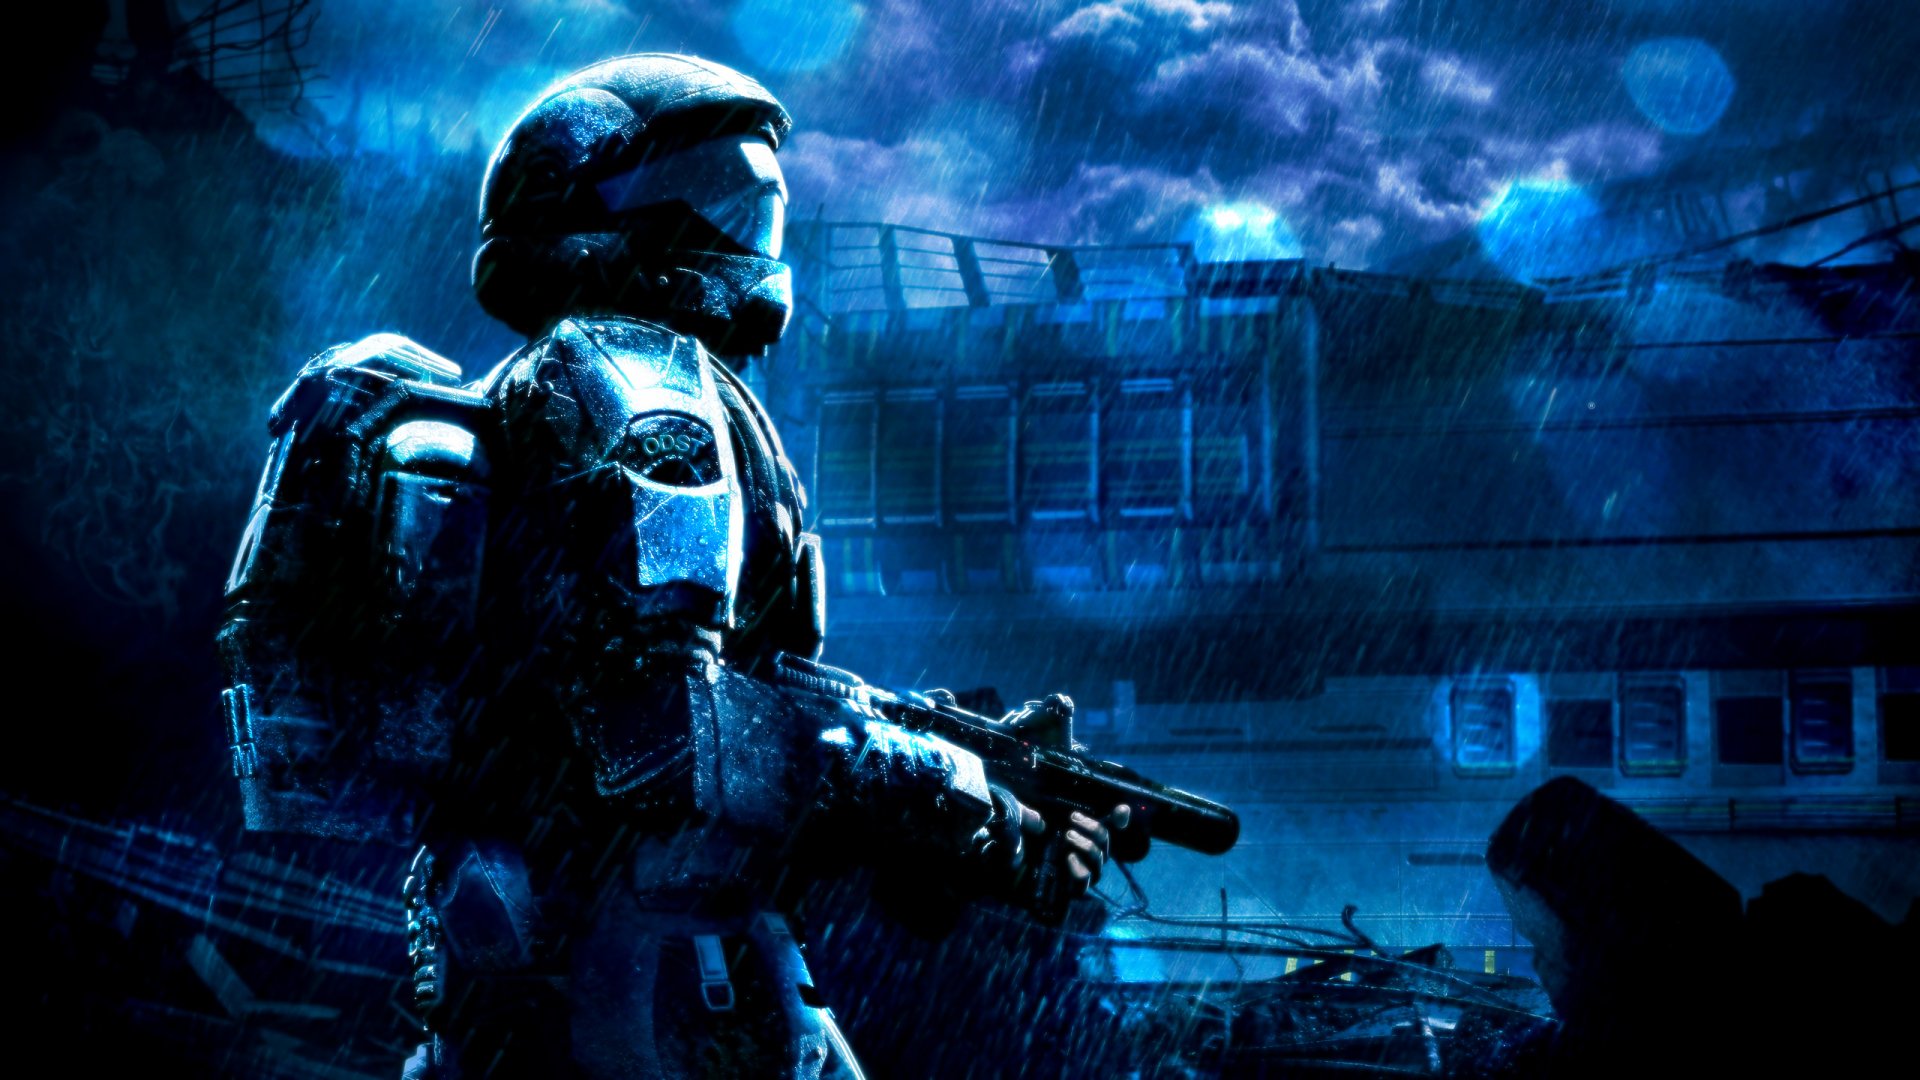 Halo 3 Odst Wallpaper Rain